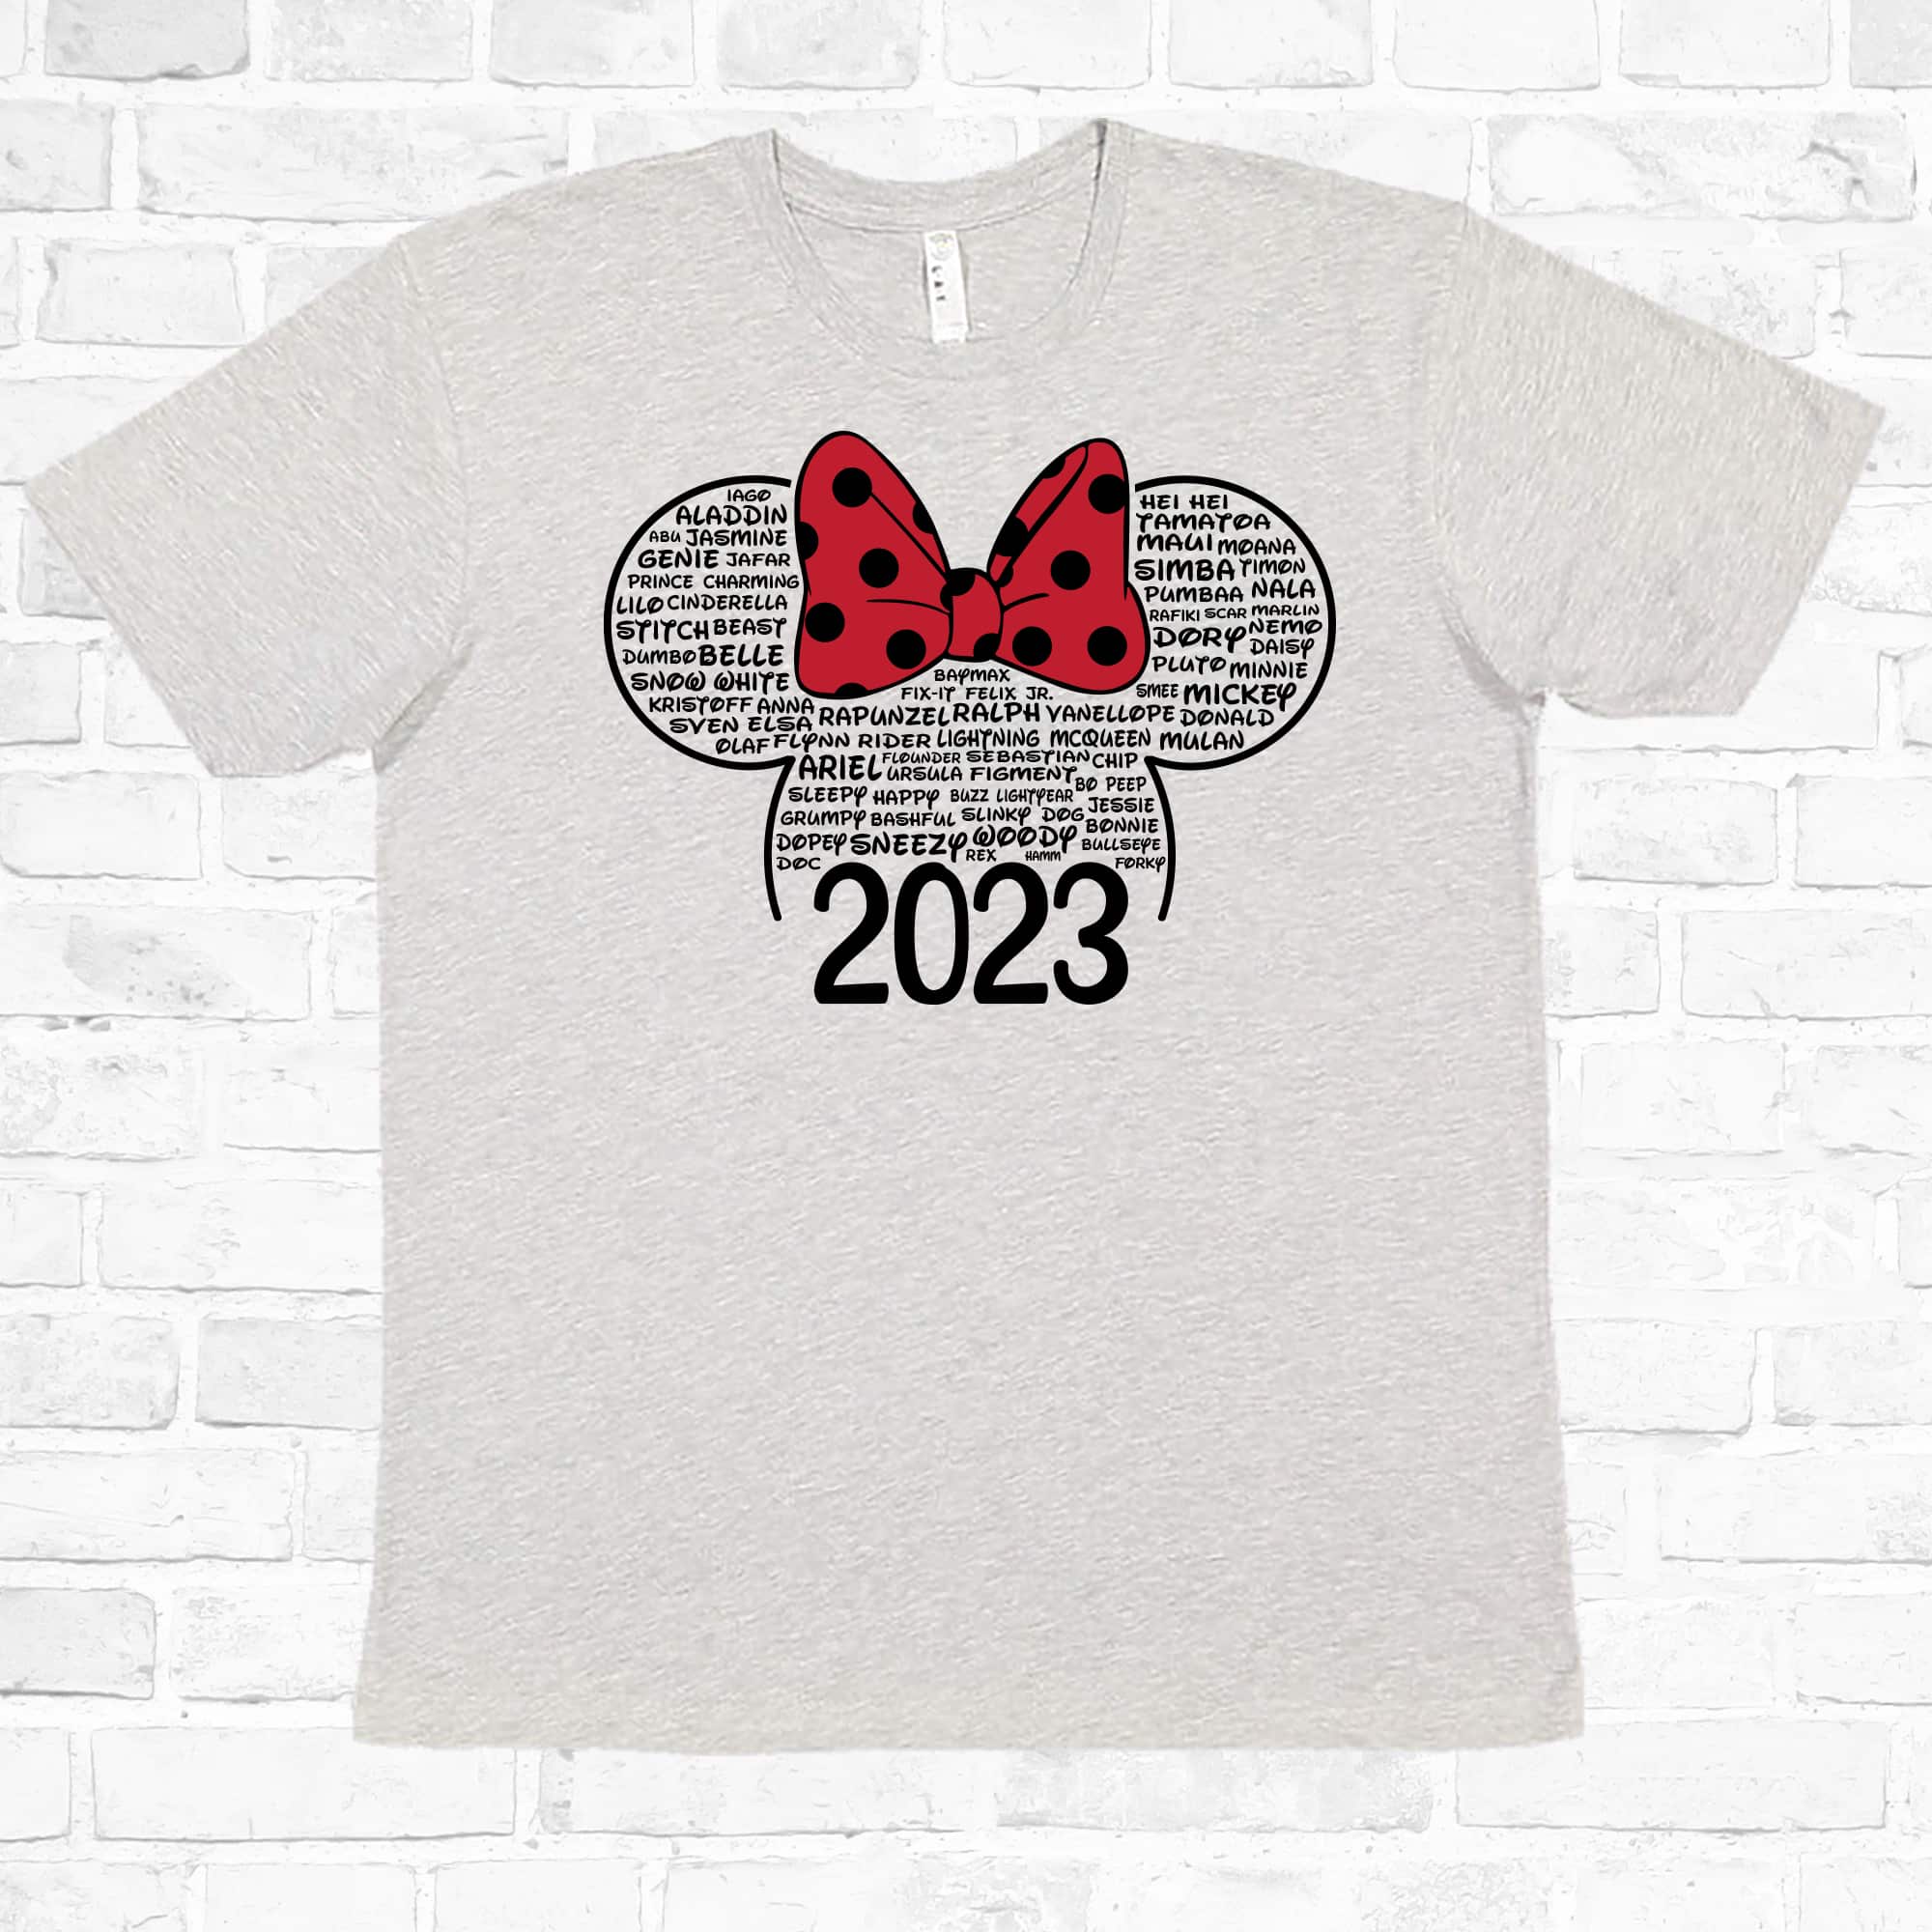 Airbrush Disney Shirt Design – Airbrush Brothers